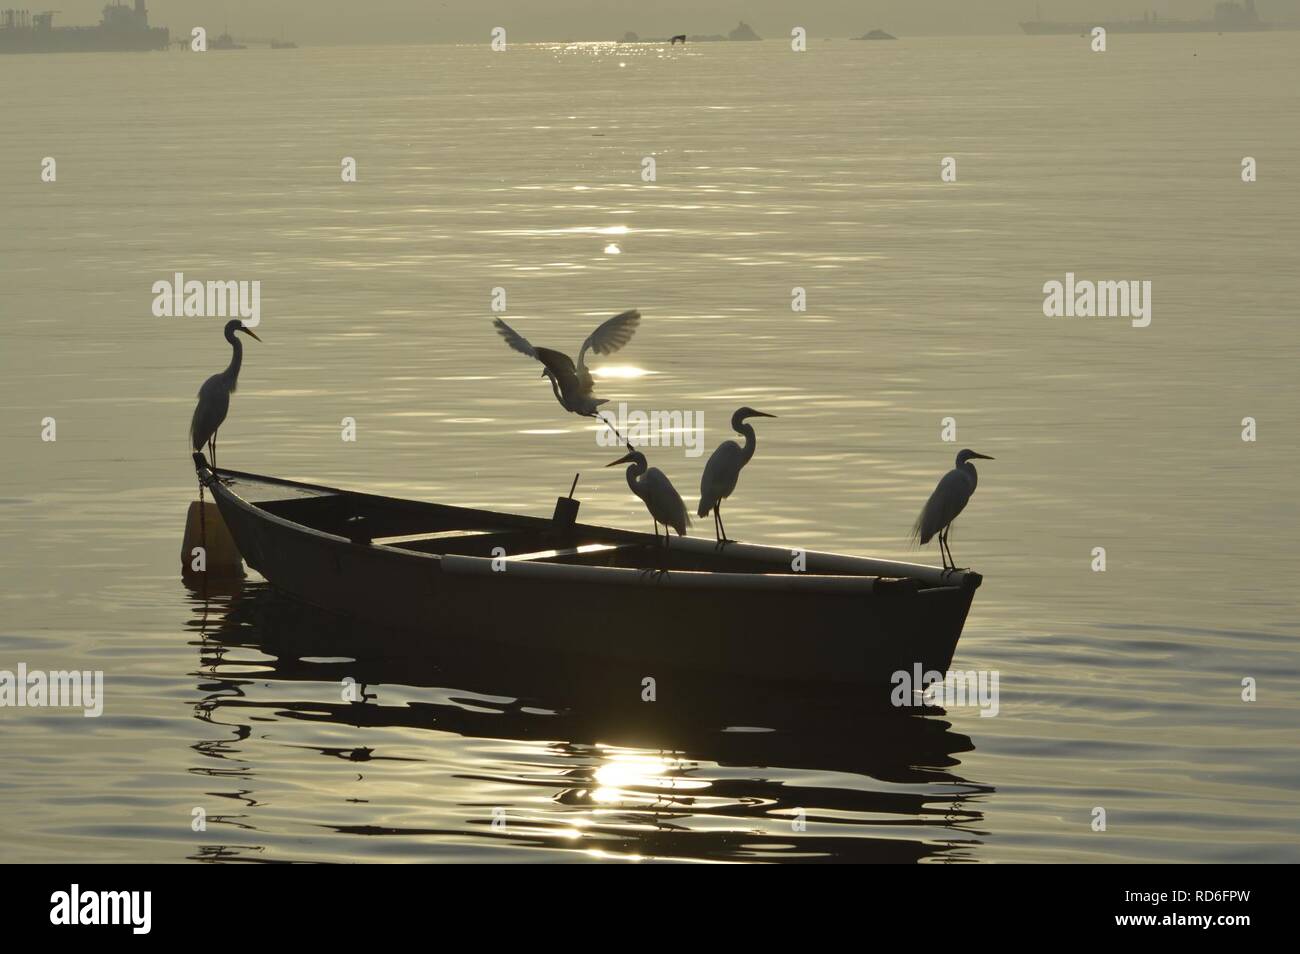 Amanhecer na Ilha do Governador - Rio de Janeiro. Garças pescando.. Stock Photo